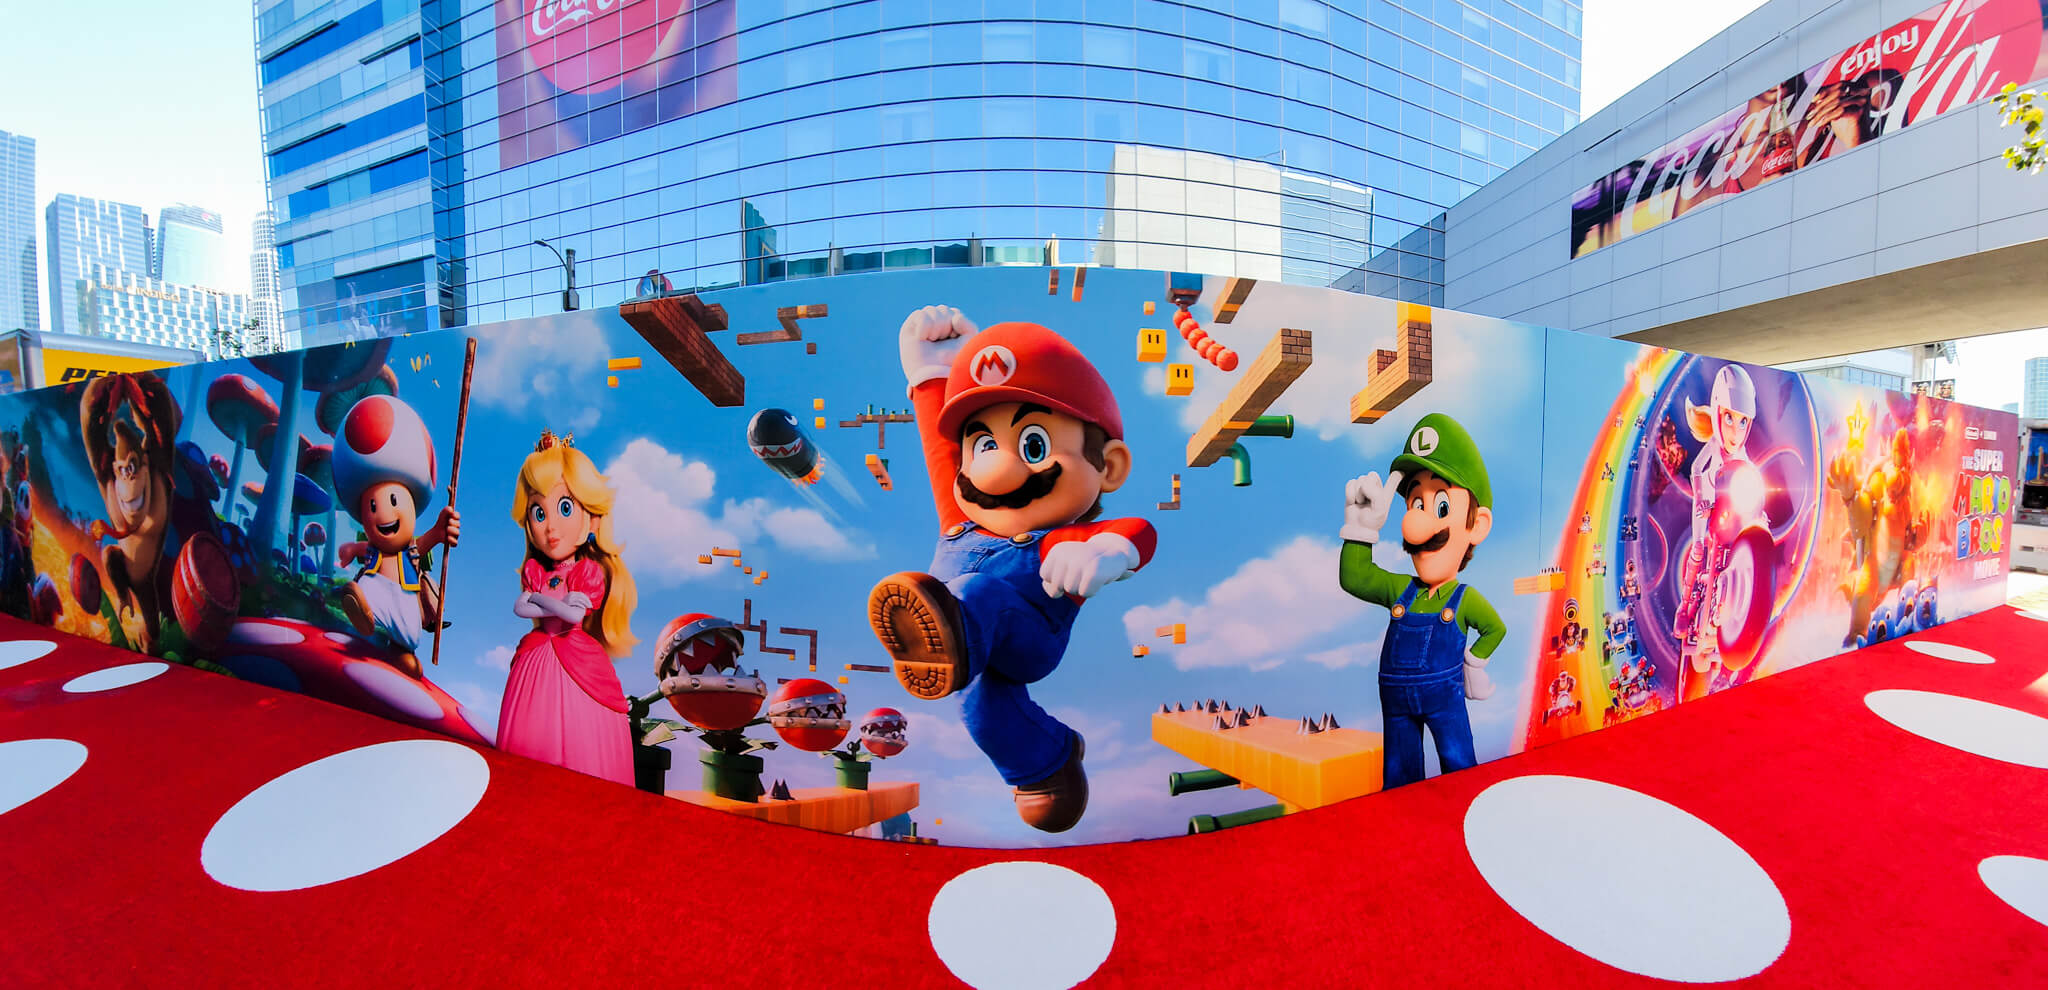 Super Mario Bros Premiere Media Wall Installation (3)